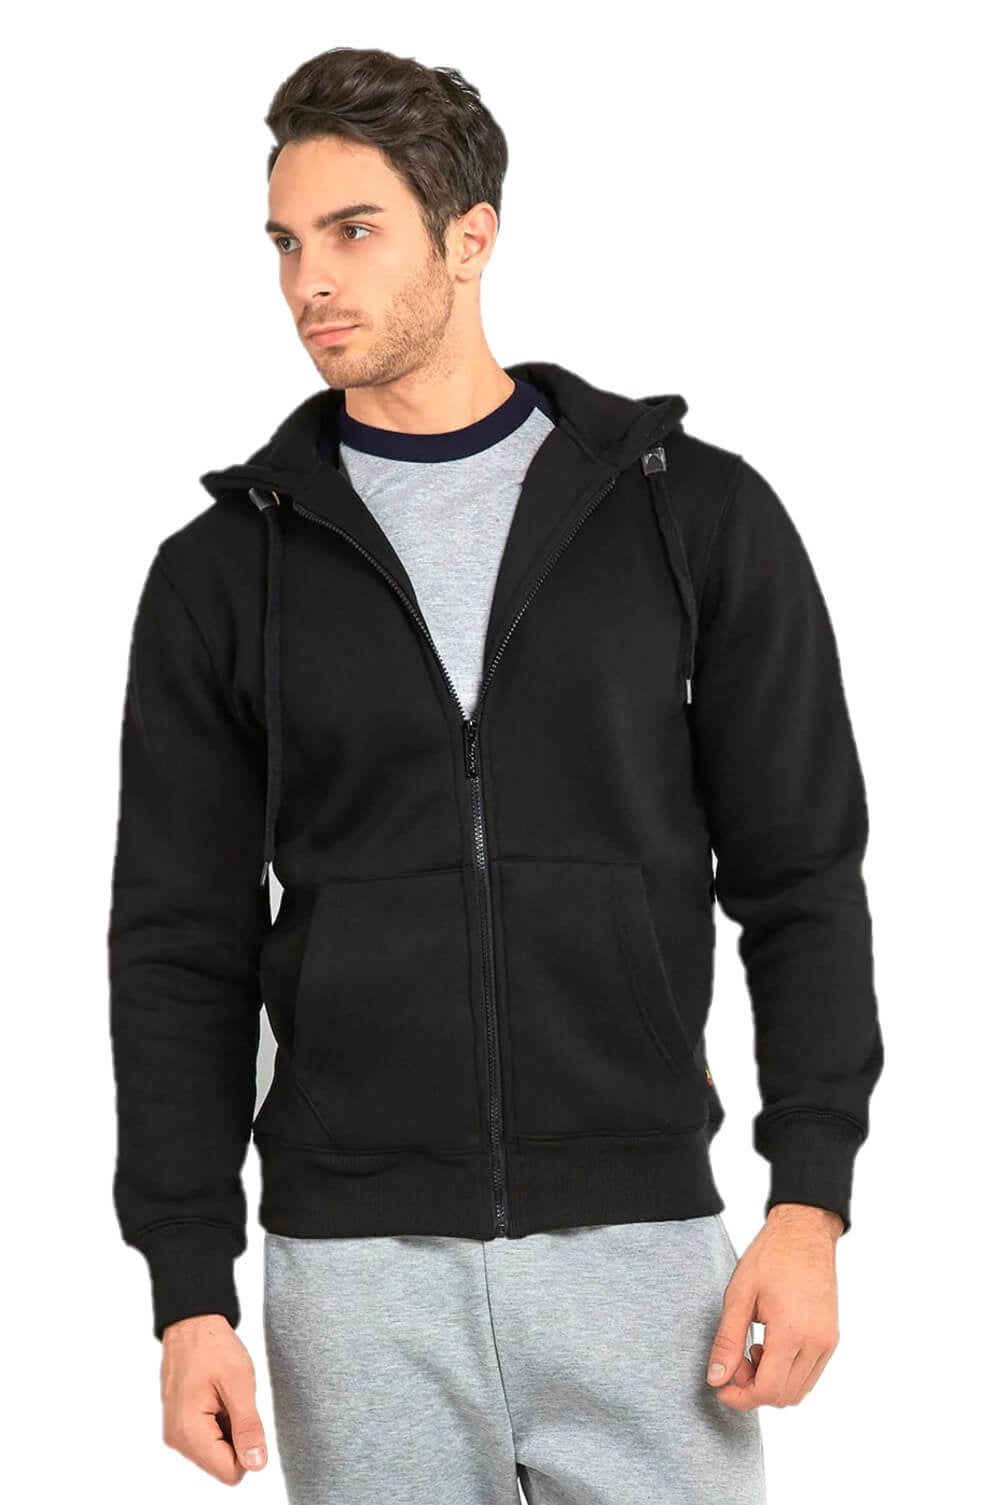 Men's Solid Fleece Full Zip Up Hoodie Jacket Sweatshirt (S, Navy) - Walmart .com